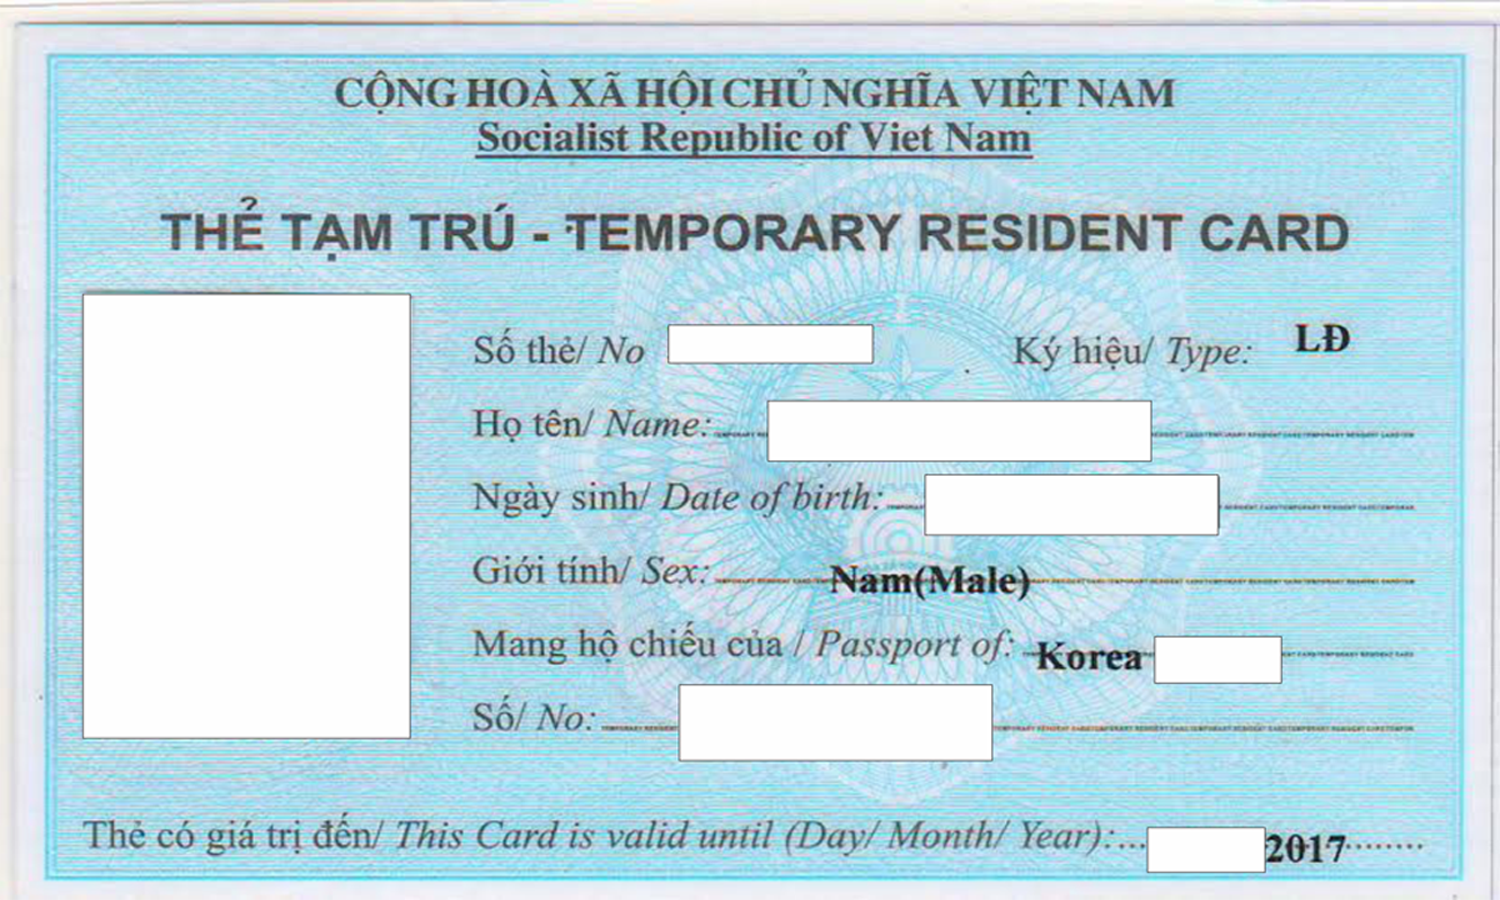 Giấy tờ liên quan đến việc xuất- Nhập, cư trú của người nước ngoài tại Việt Nam.